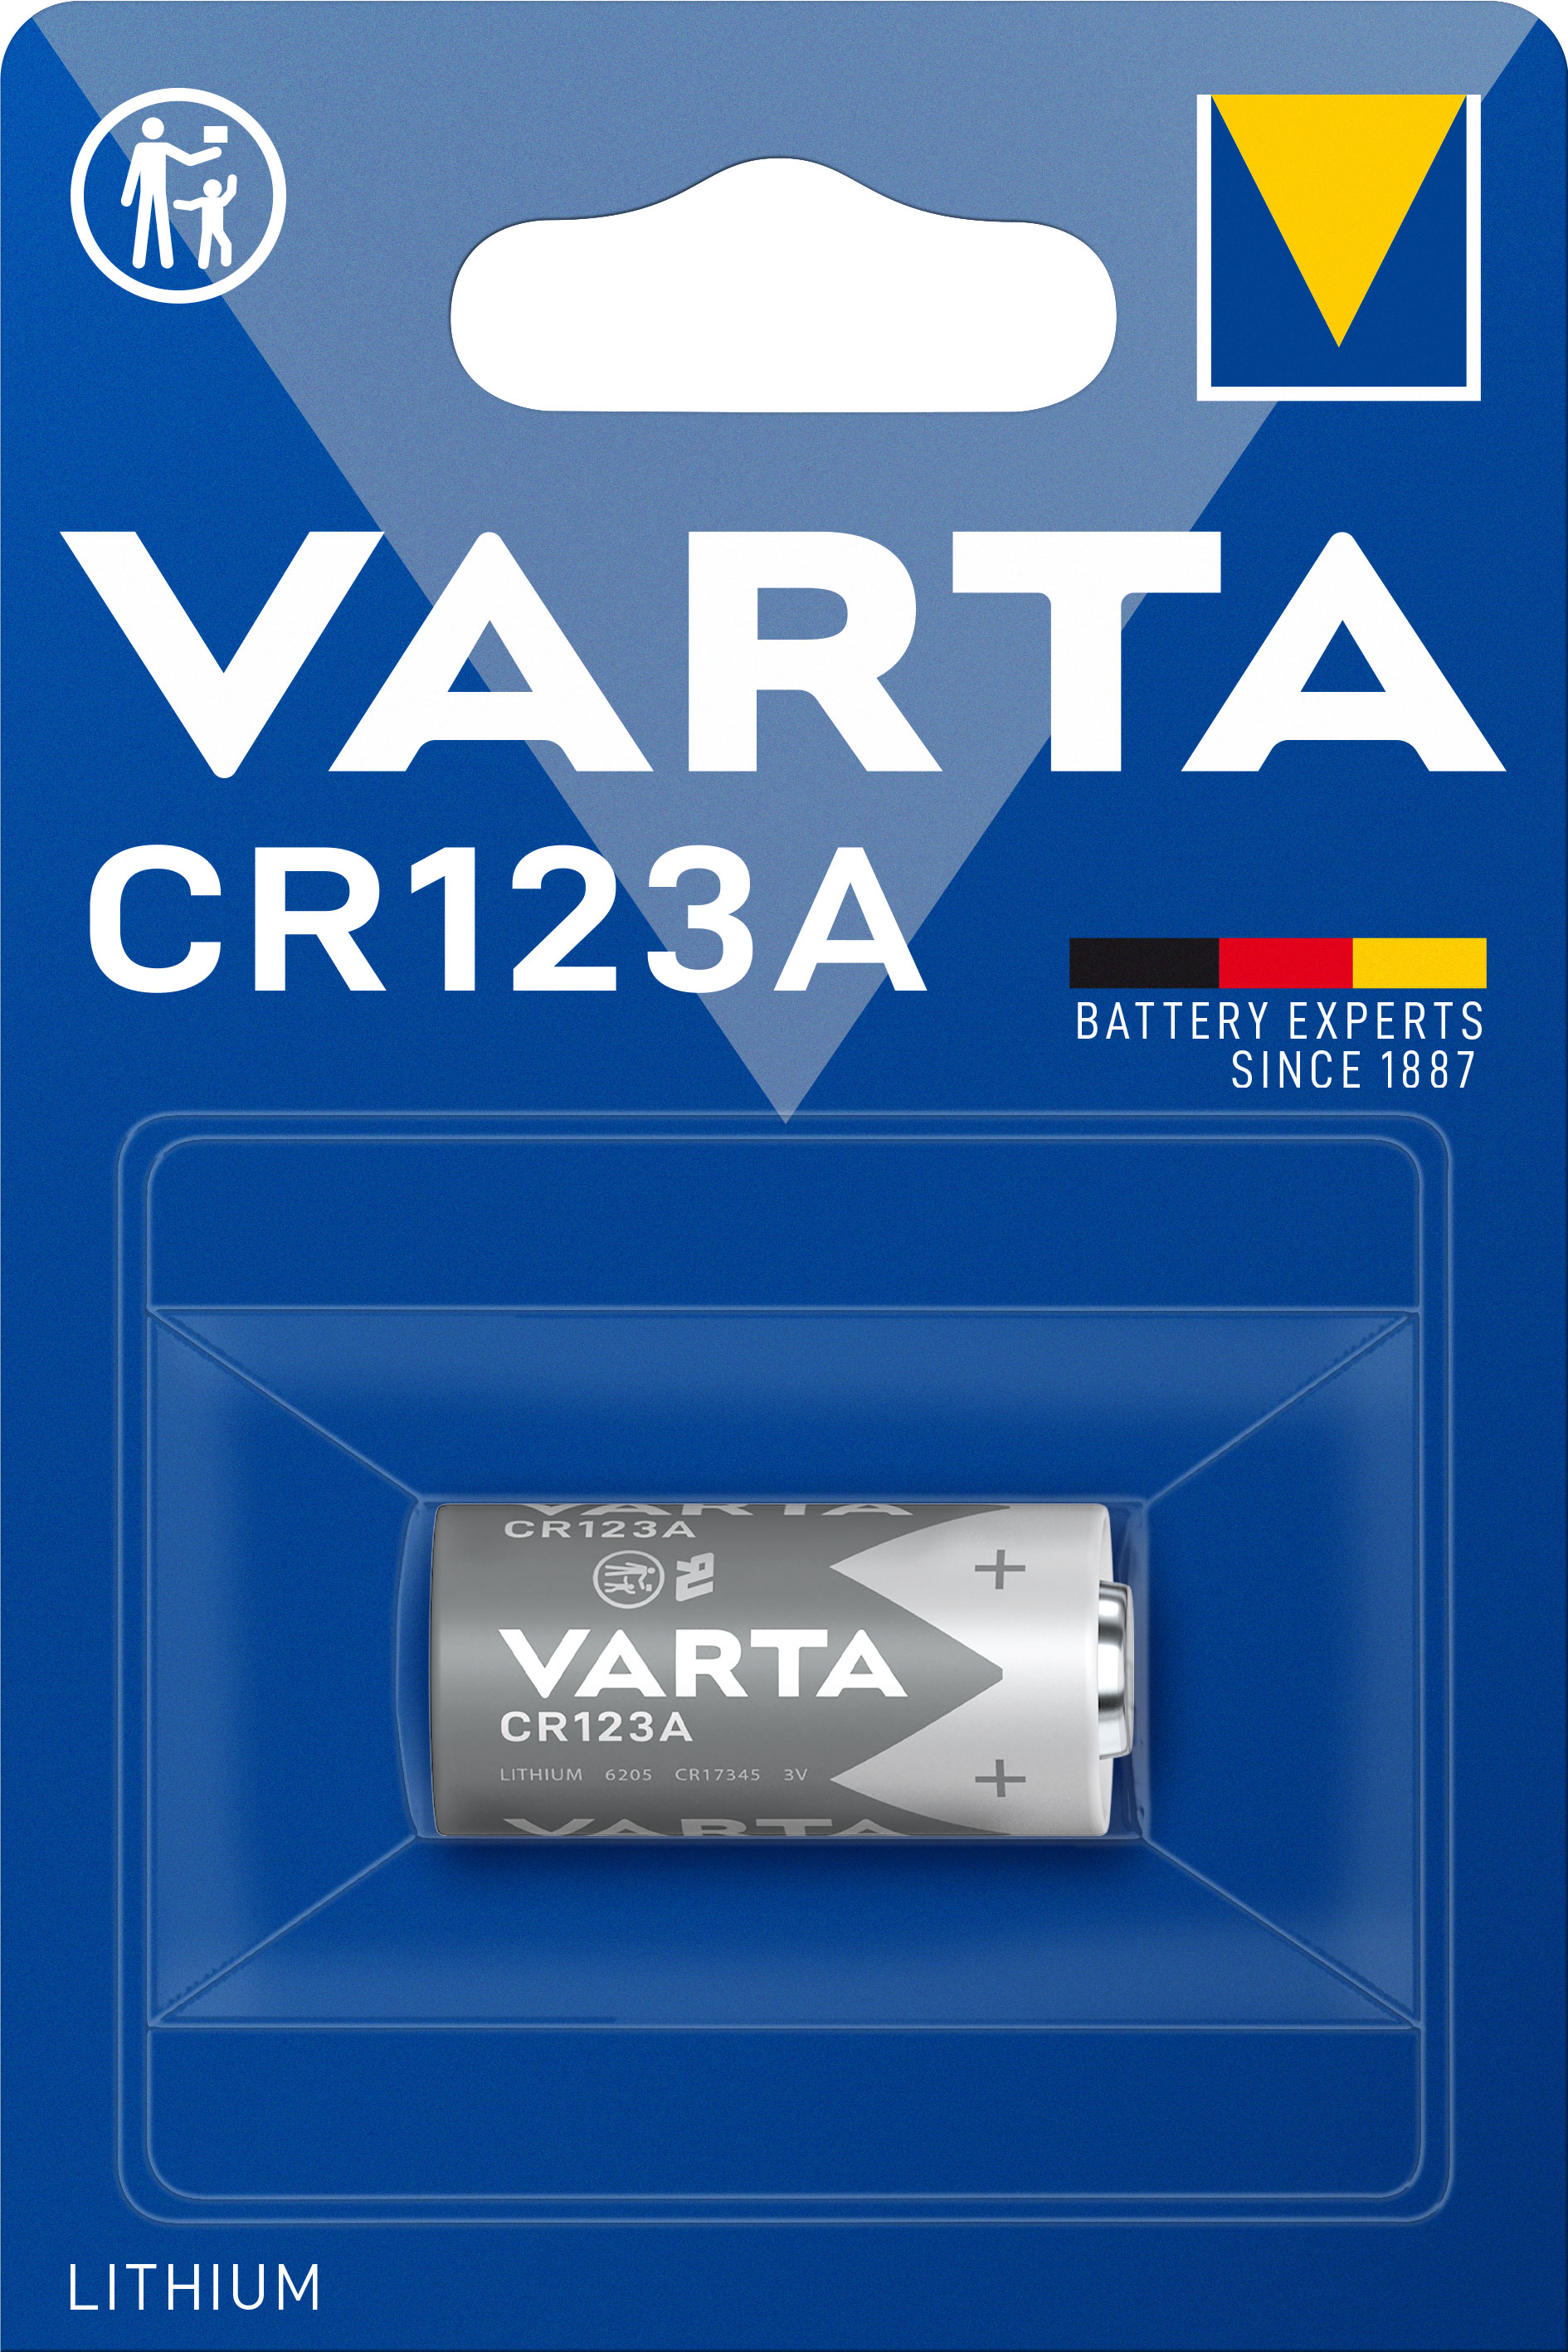 VARTA BATTERY CR123A 3V LITHIUM